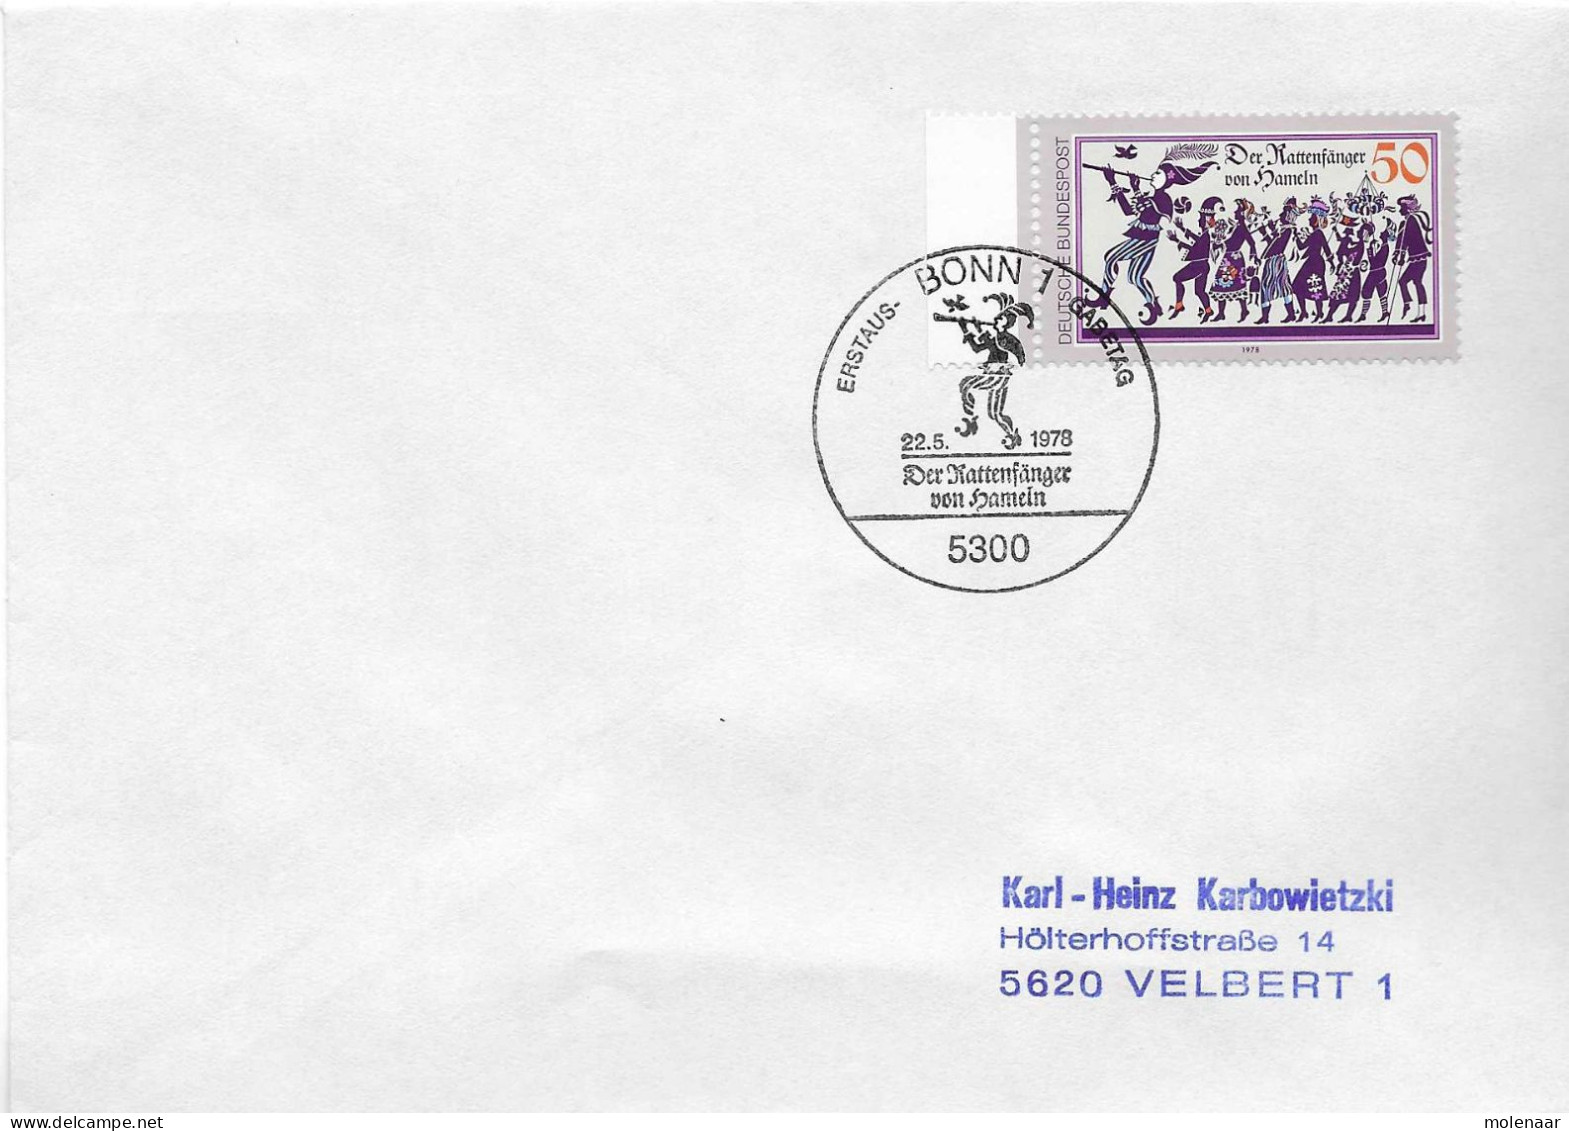 Postzegels > Europa > Duitsland > West-Duitsland > 1970-1979 > Brief Met No. 972 (17367) - Storia Postale